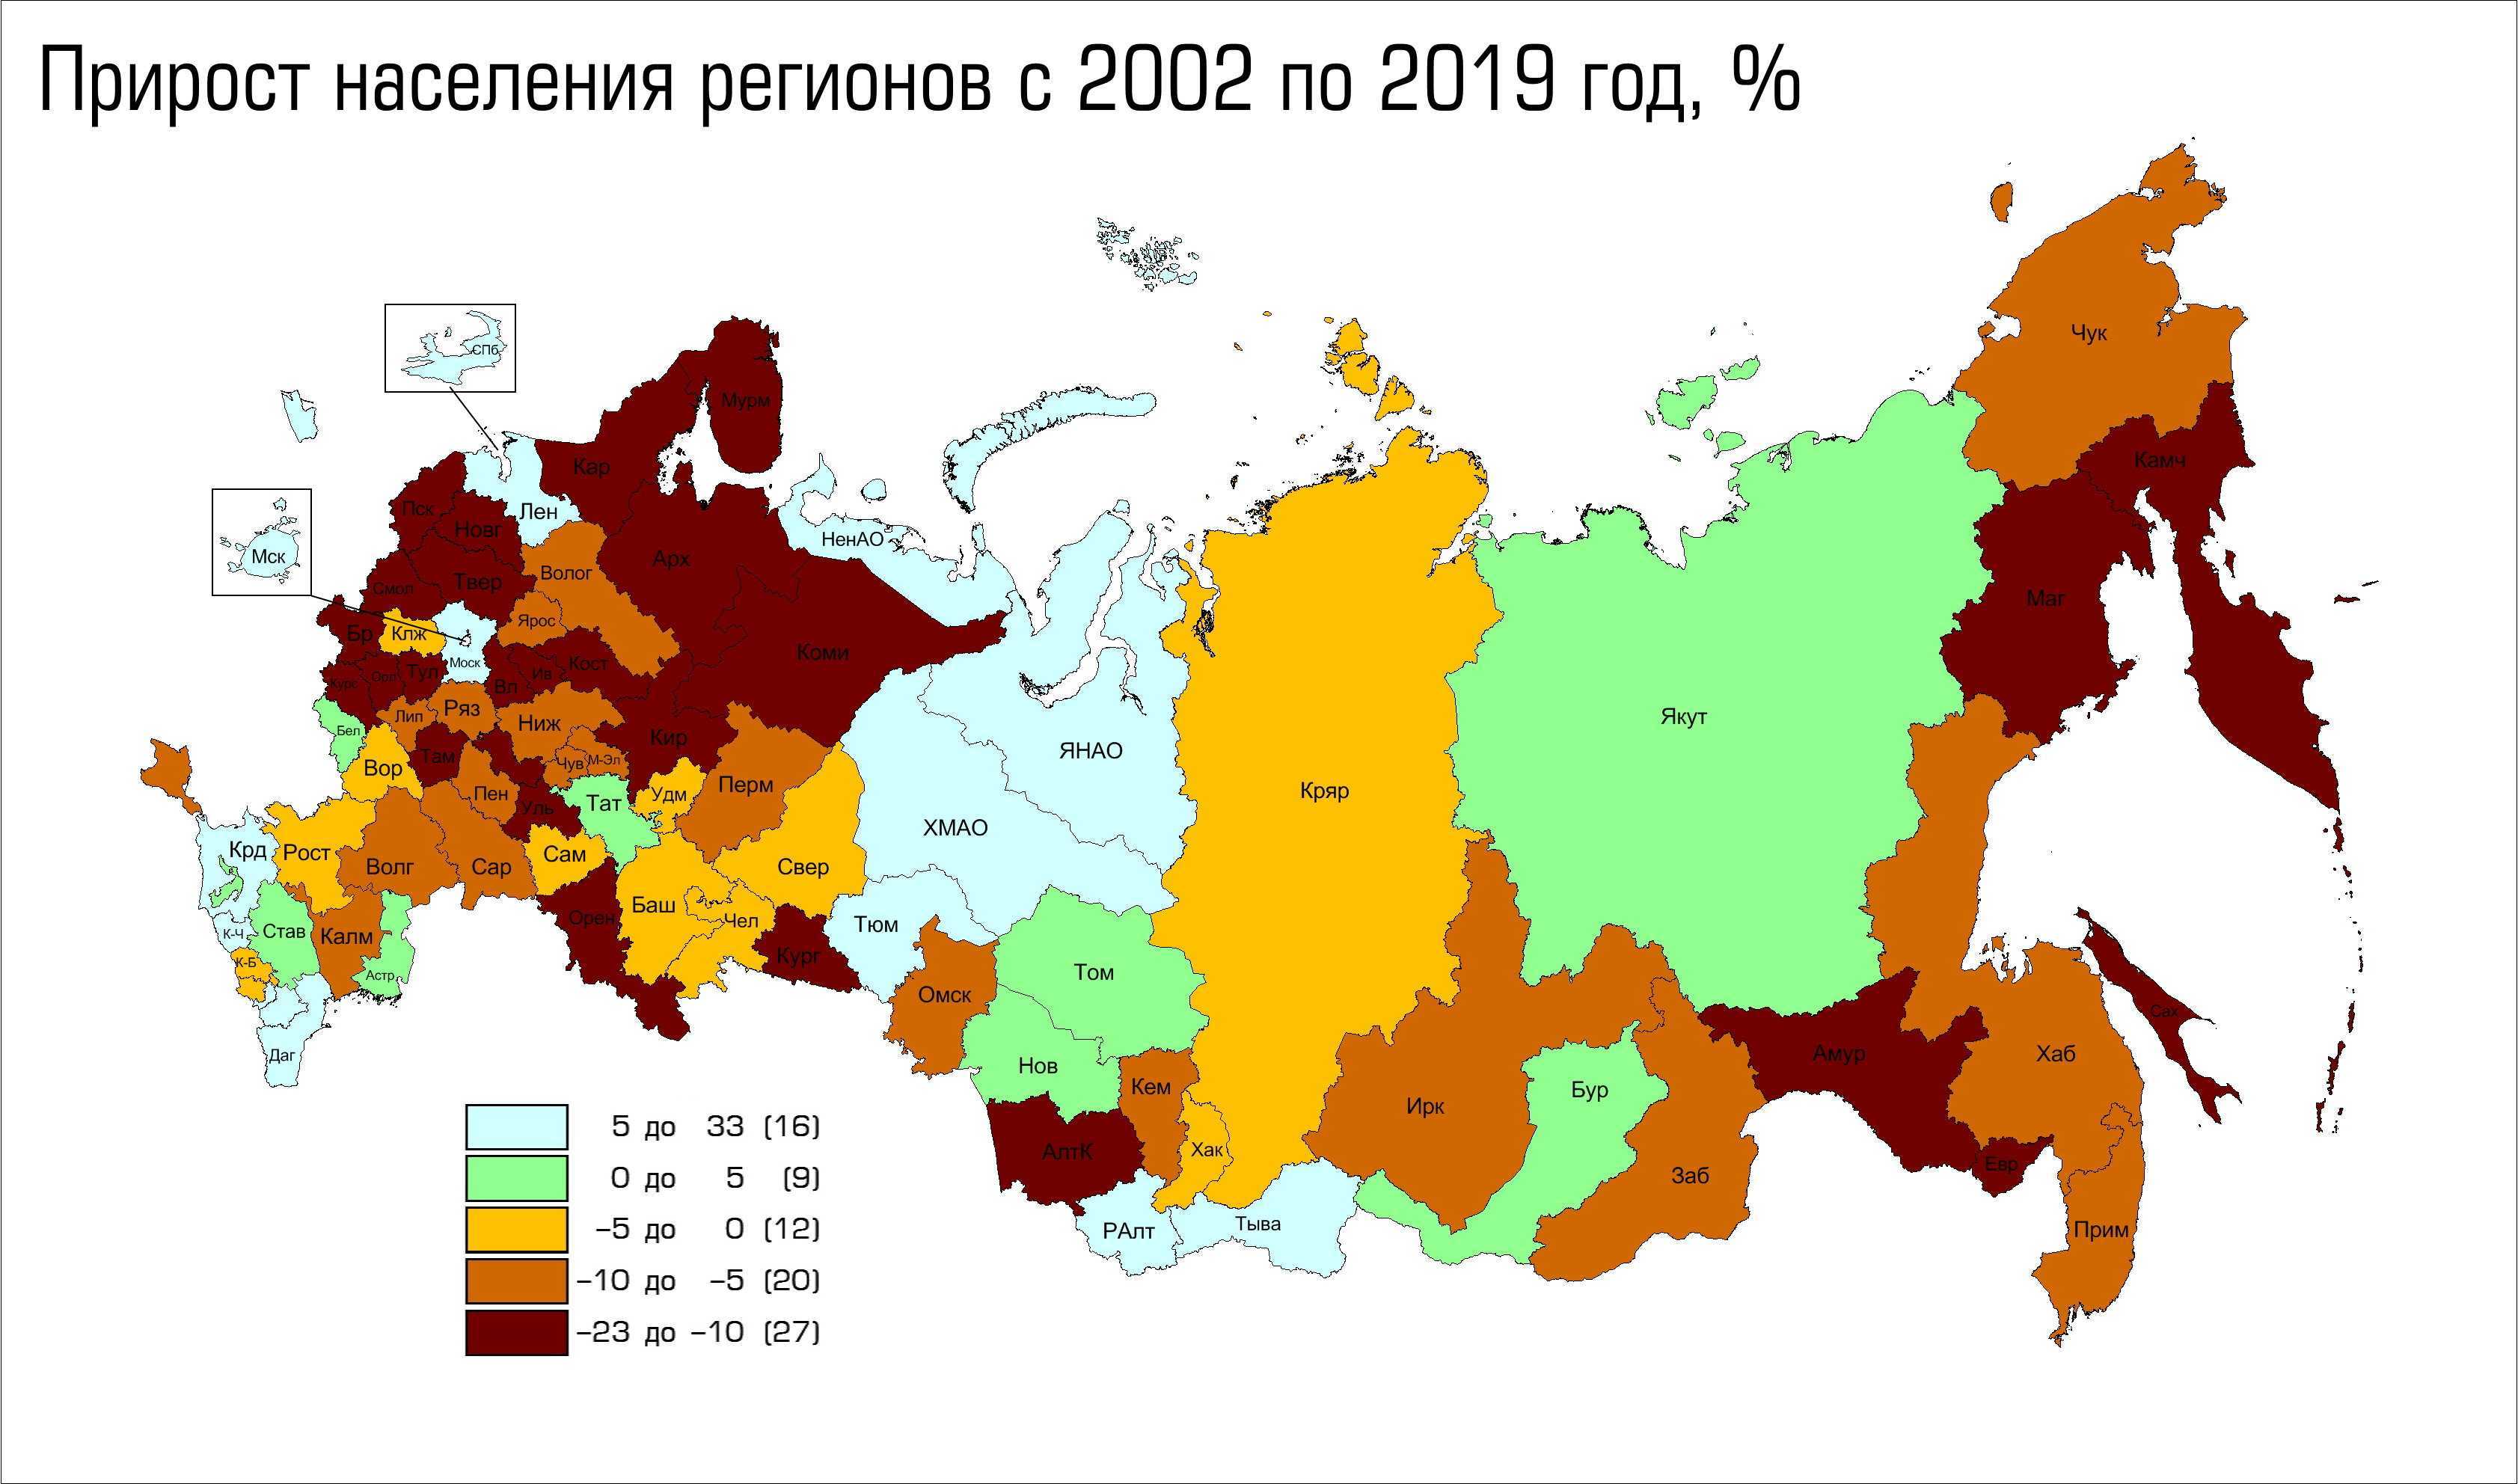 Какой из субъектов россии является наиболее населенным. Карта России по областям население 2021 год. Карта естественного прироста населения России. Карта прироста населения России по регионам. Демографическаяыф карта Росси.